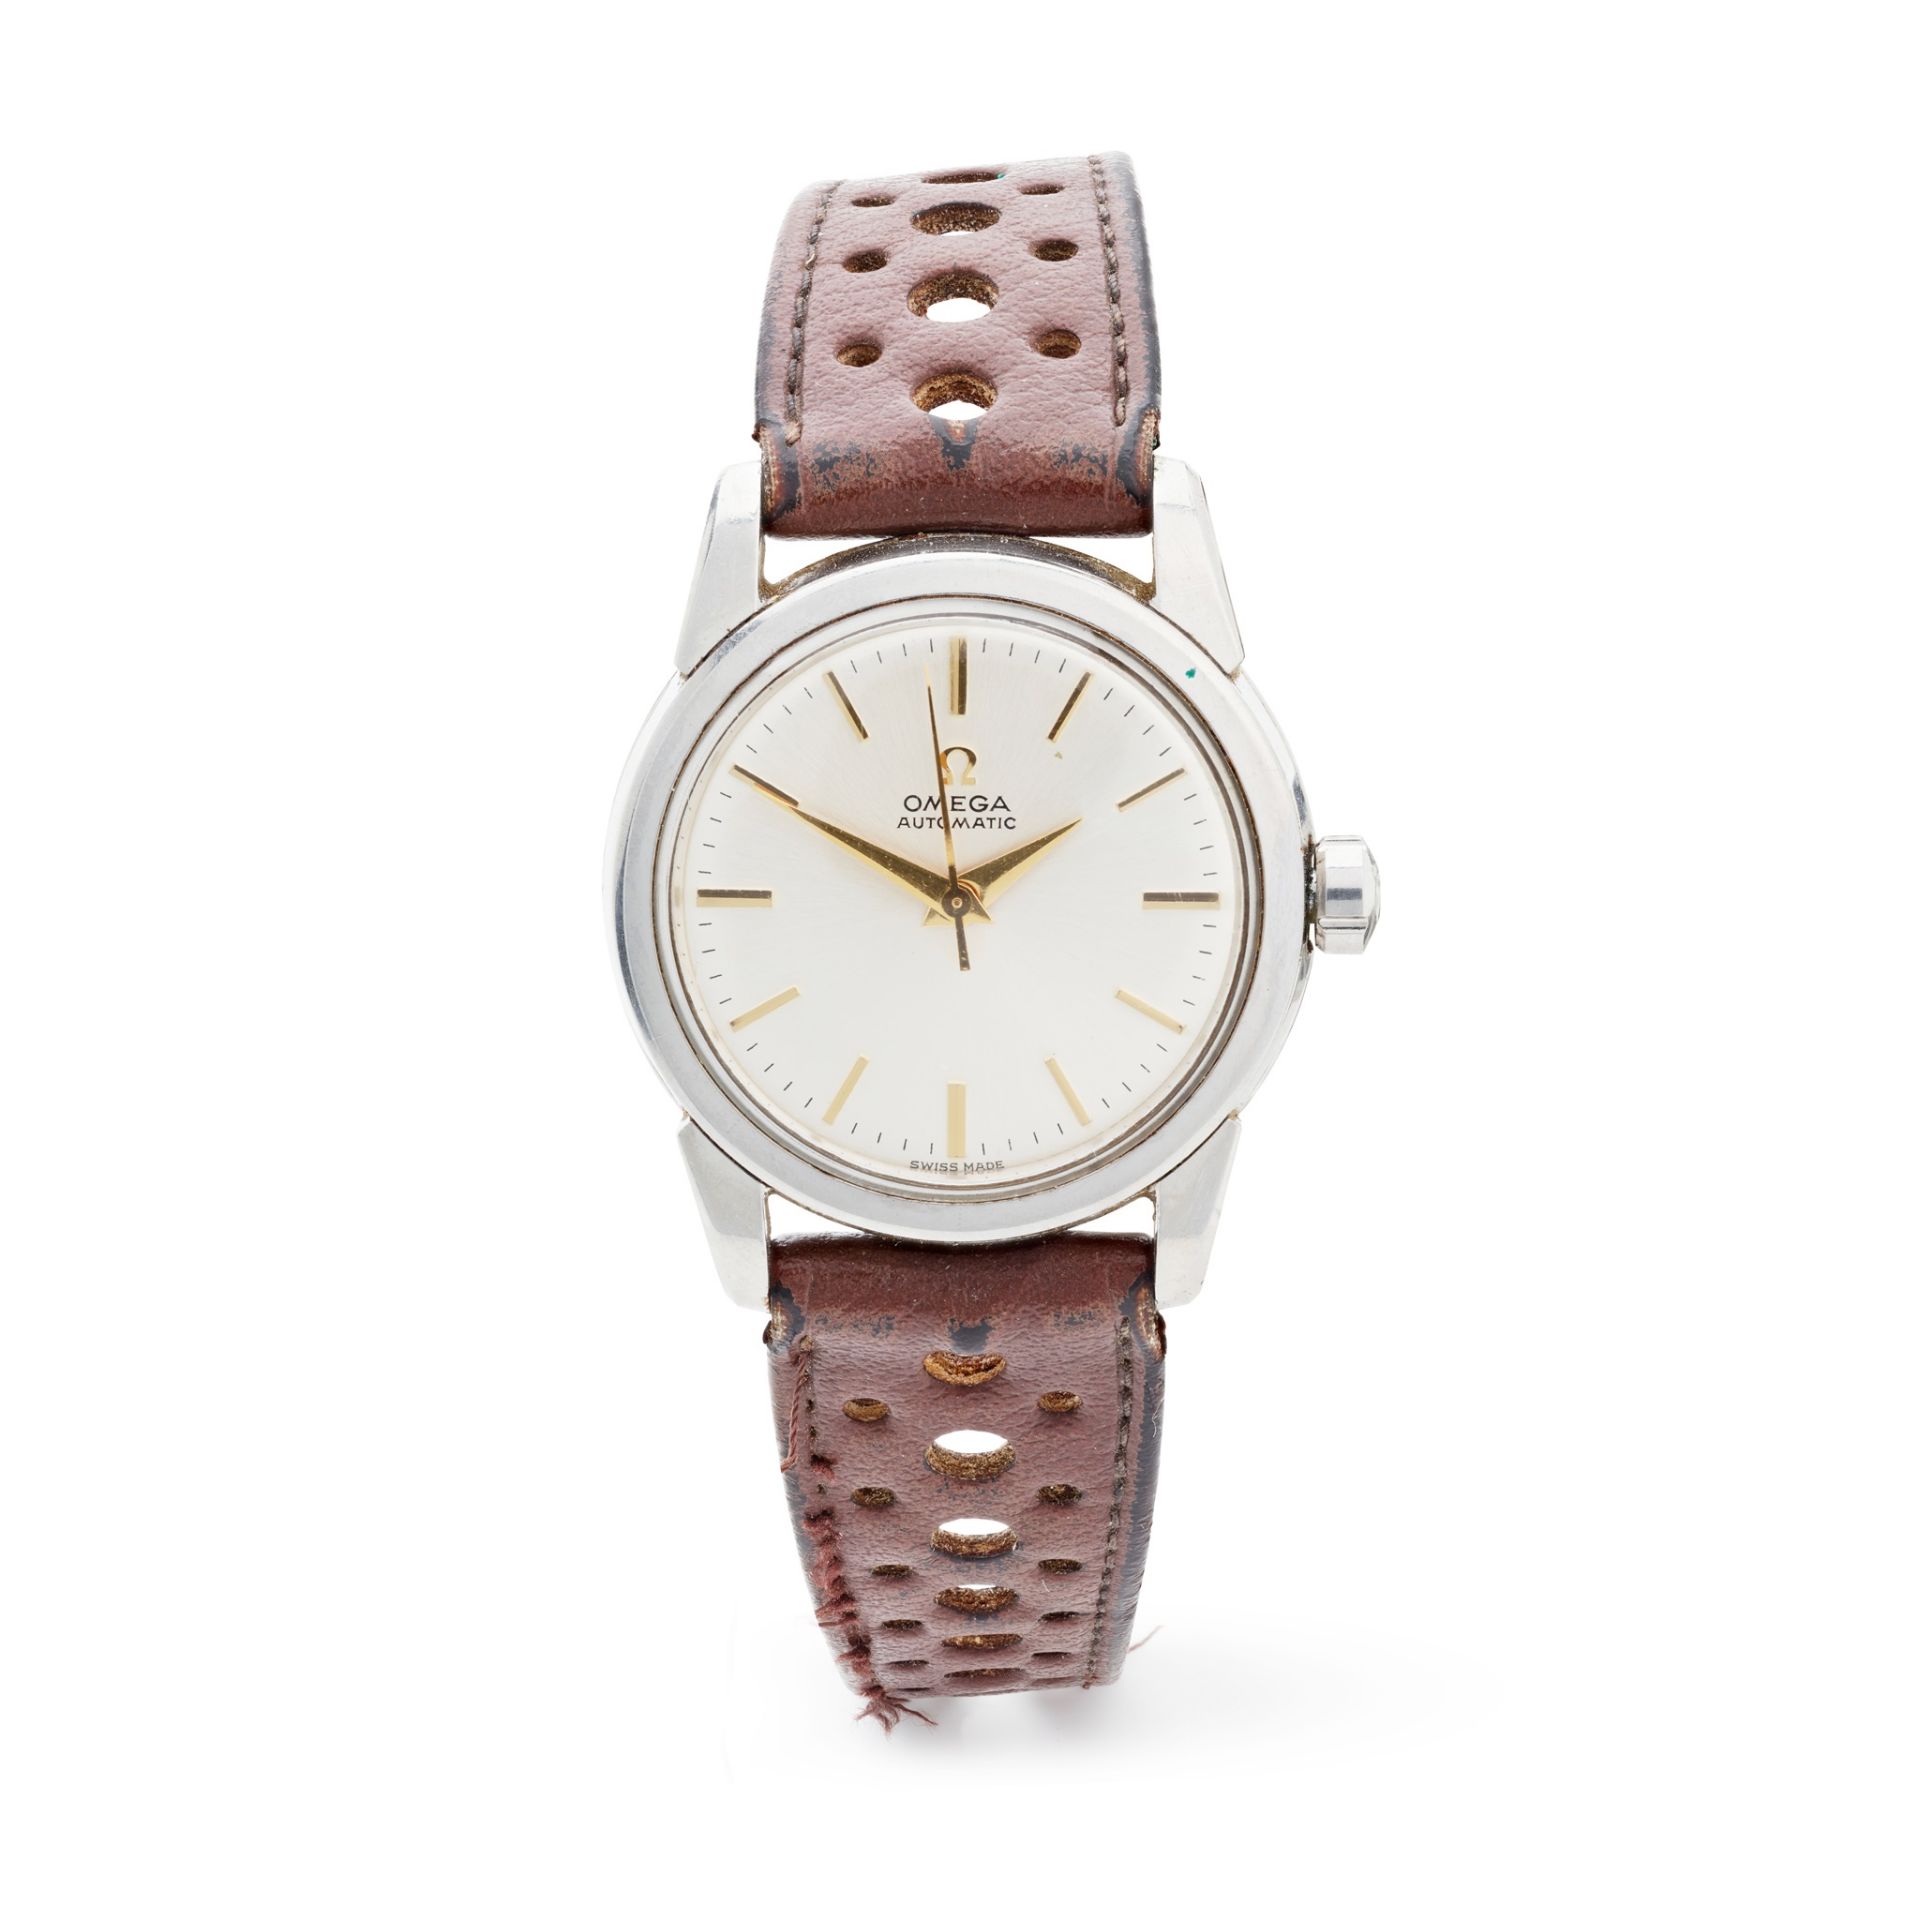 Omega: a 1950's steel watch